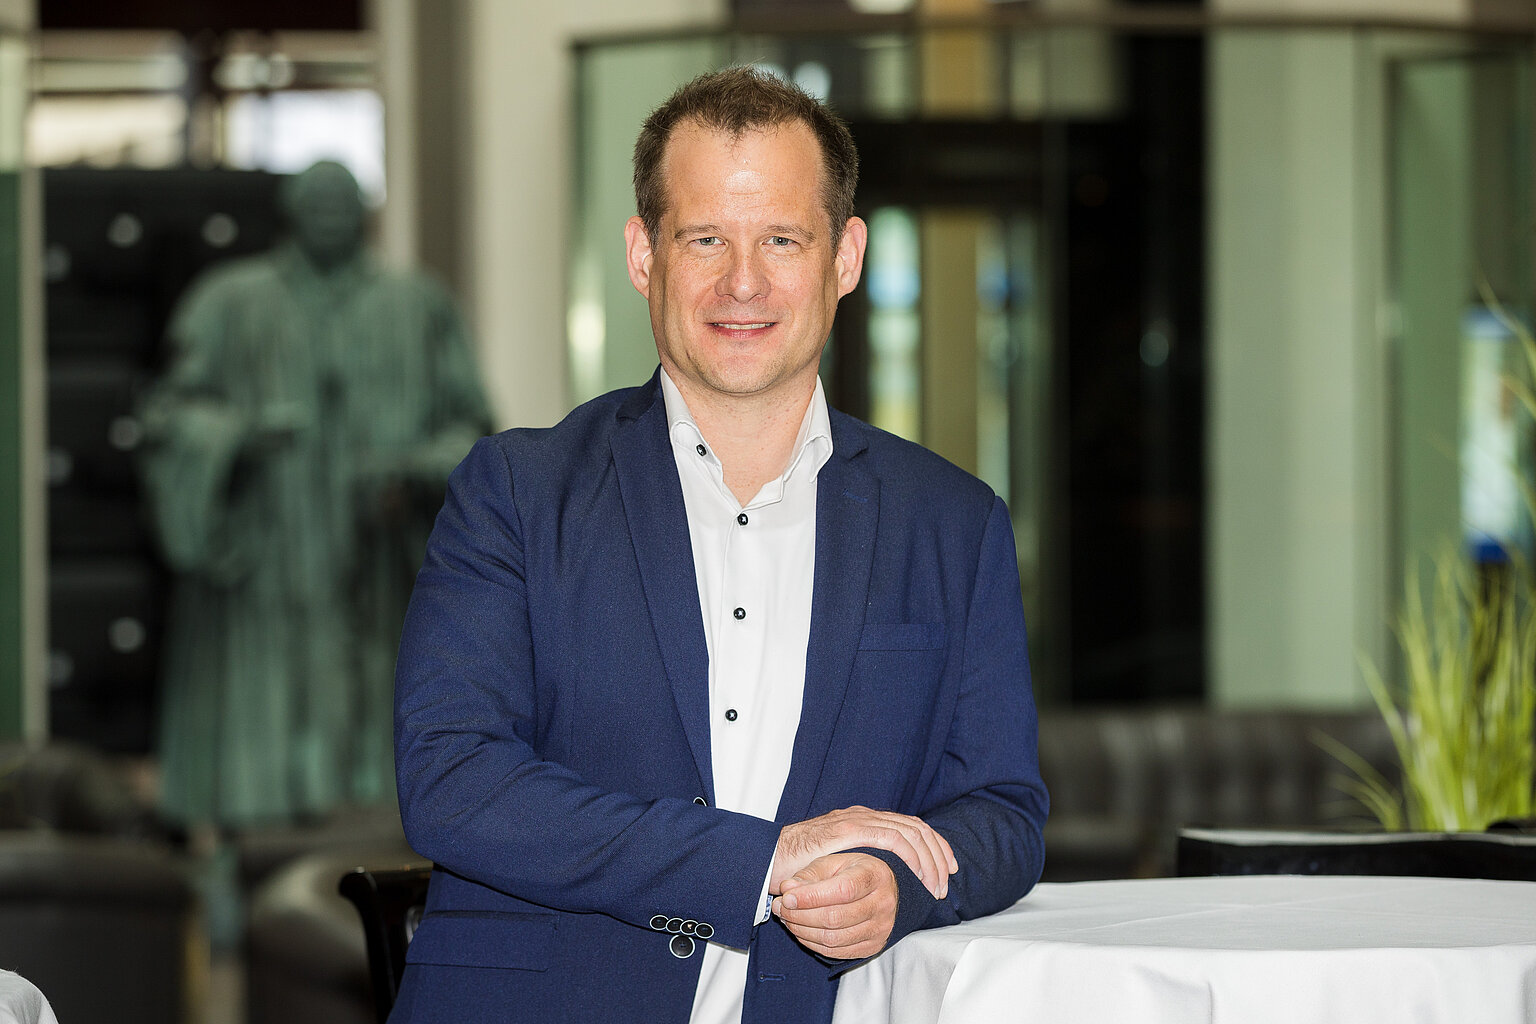 Mika Beuster (45) ist der neue DJV-Bundesvorsitzender – Mika Beuster (45) ist der neue DJV-Bundesvorsitzender